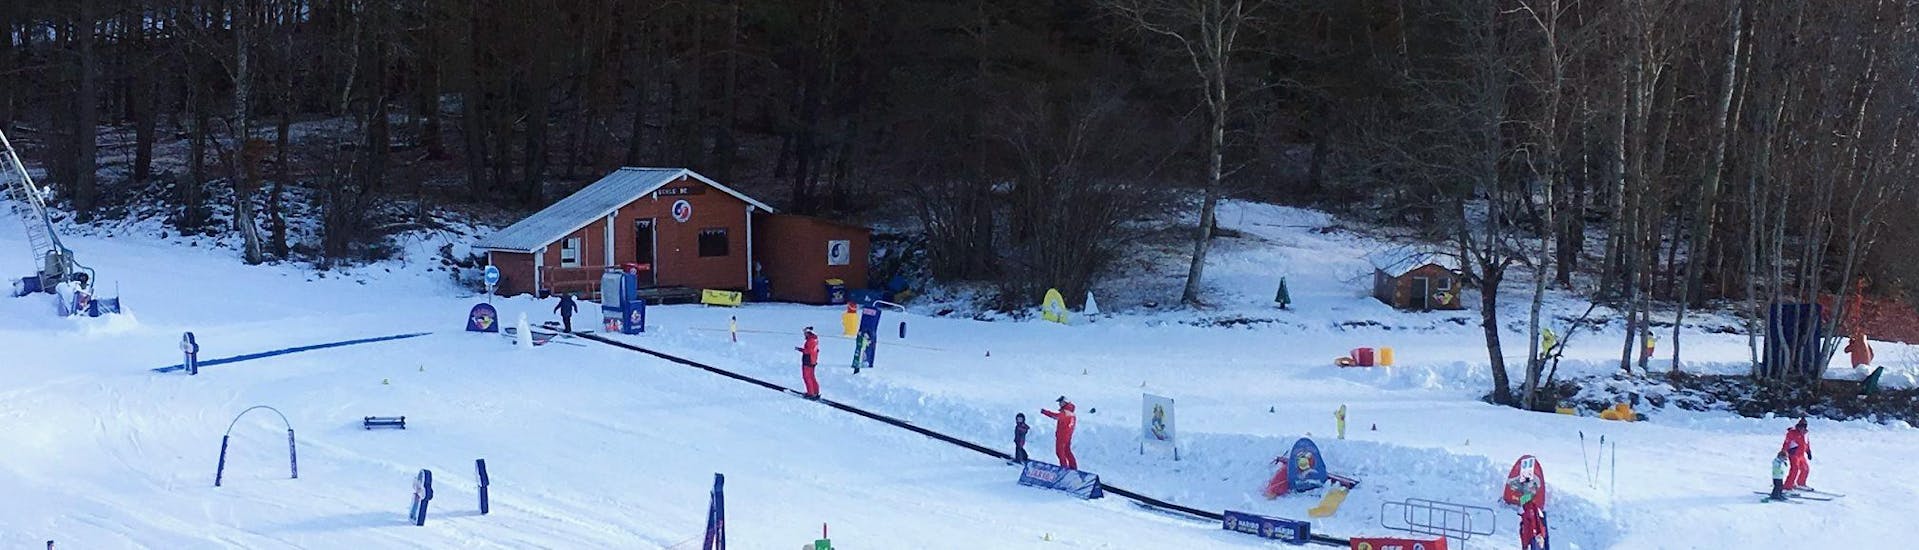 Les enfants évoluent dans l'environnement sécurisé du jardin d'enfants pour apprendre les bases du ski pendant leur Premier Cours de ski Enfants (3-4 ans) avec l'ESF Montclar.